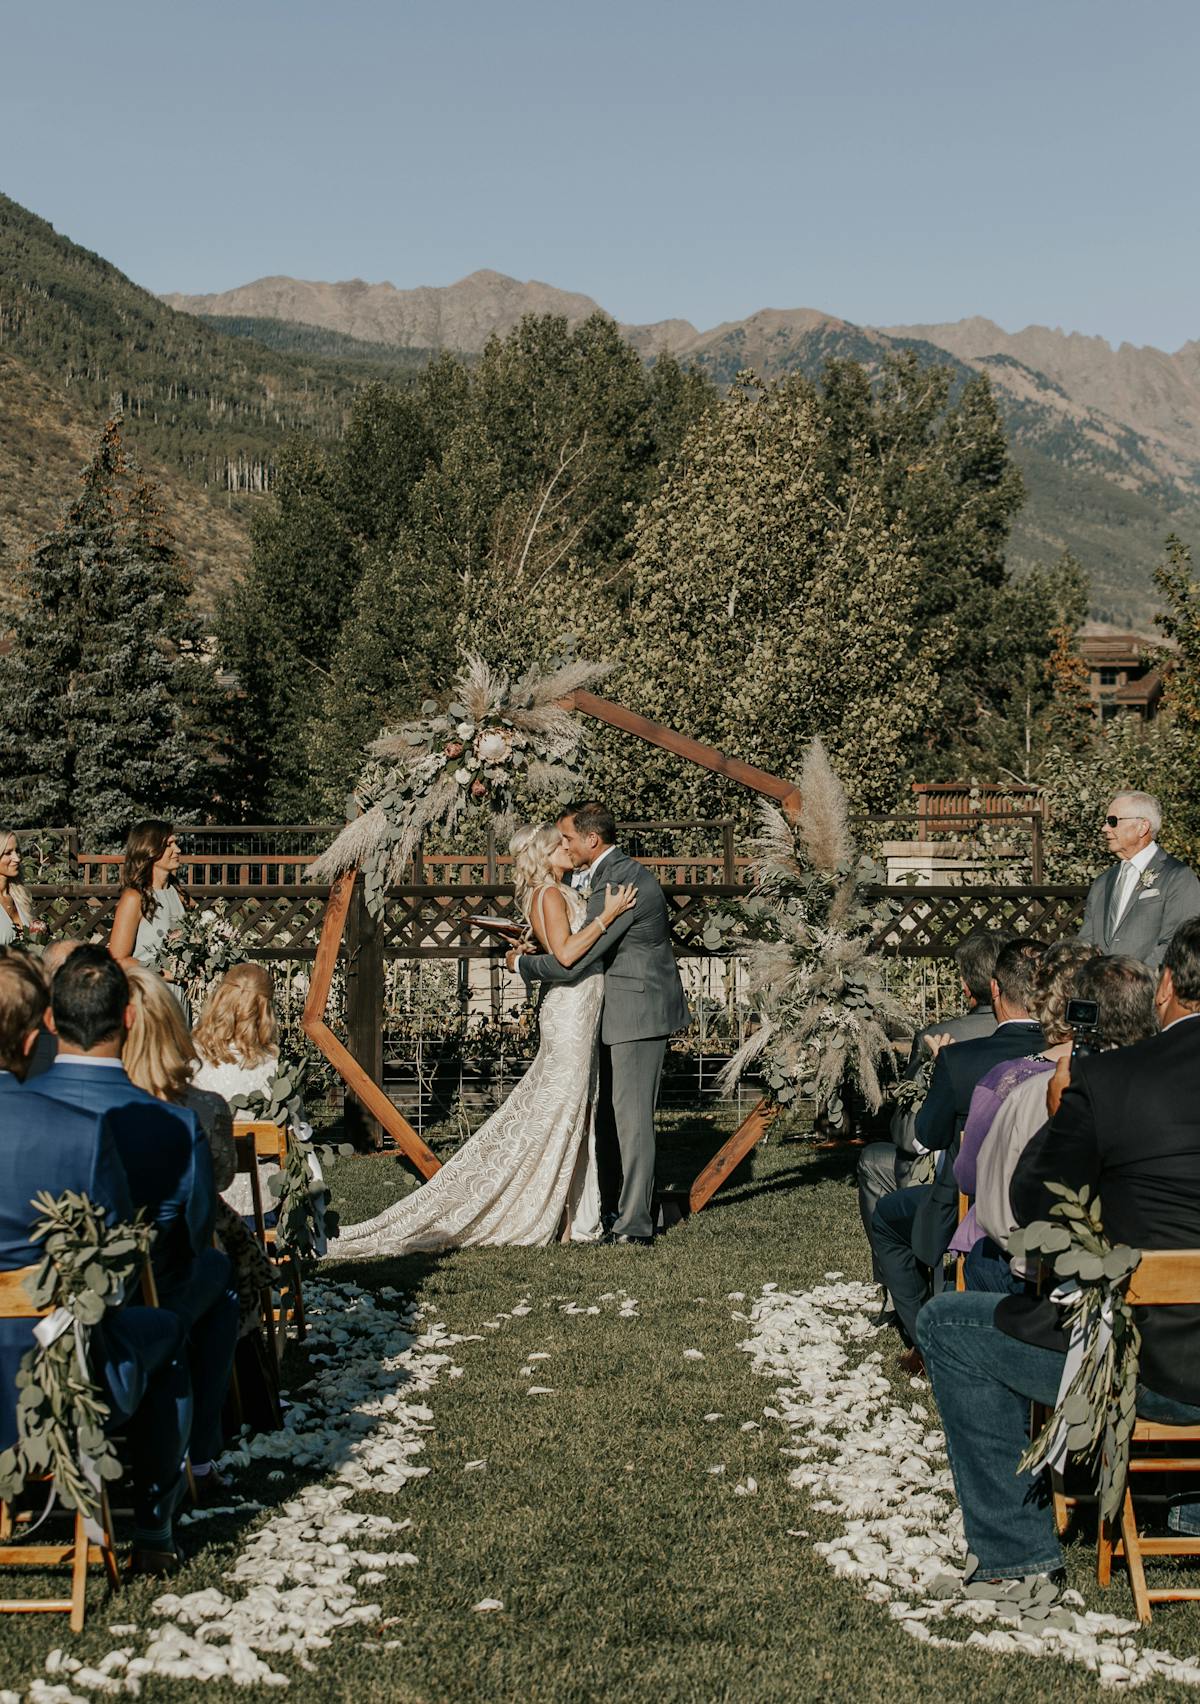 Larkspur Wedding Venue Vail Colorado Mountain Wedding Ceremony